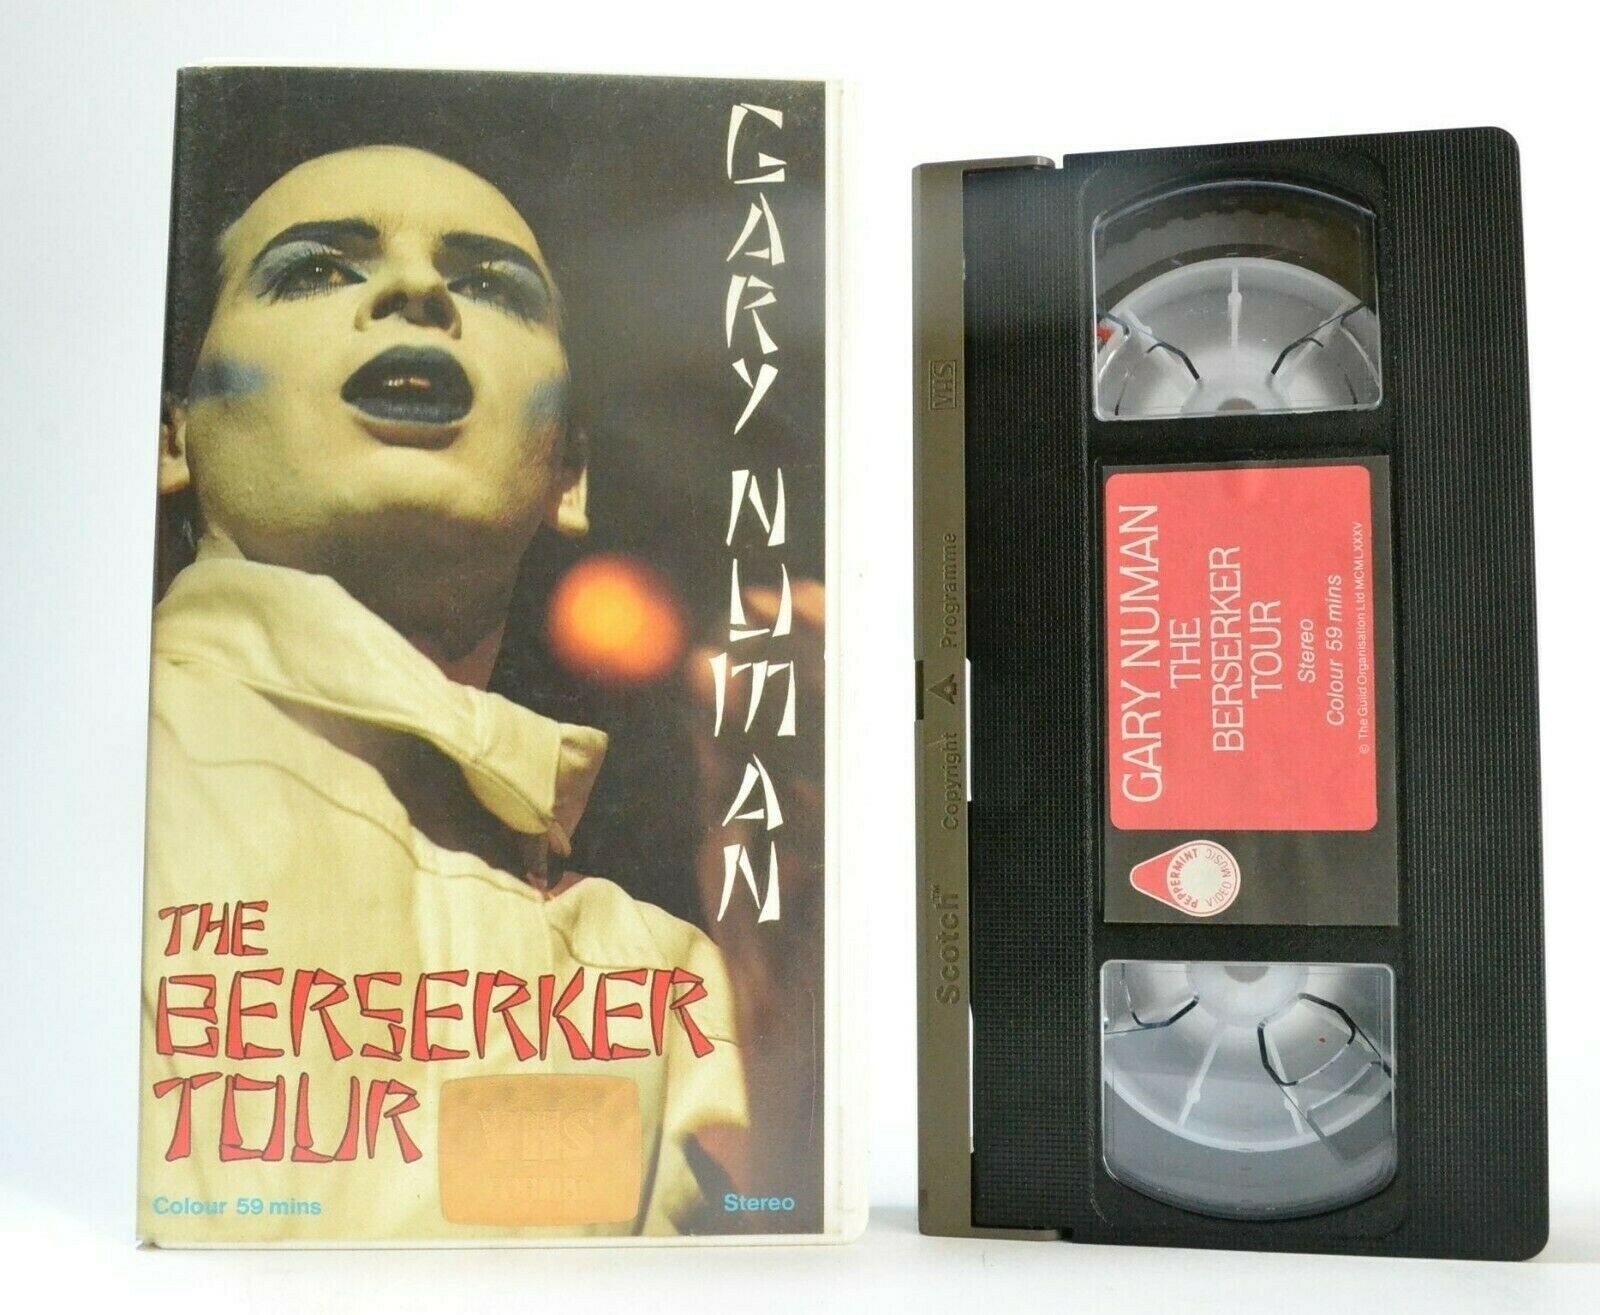 Gary Numan: The Berserker Tour - (1984) Hammersmith Odeon - Concert - Pal VHS-